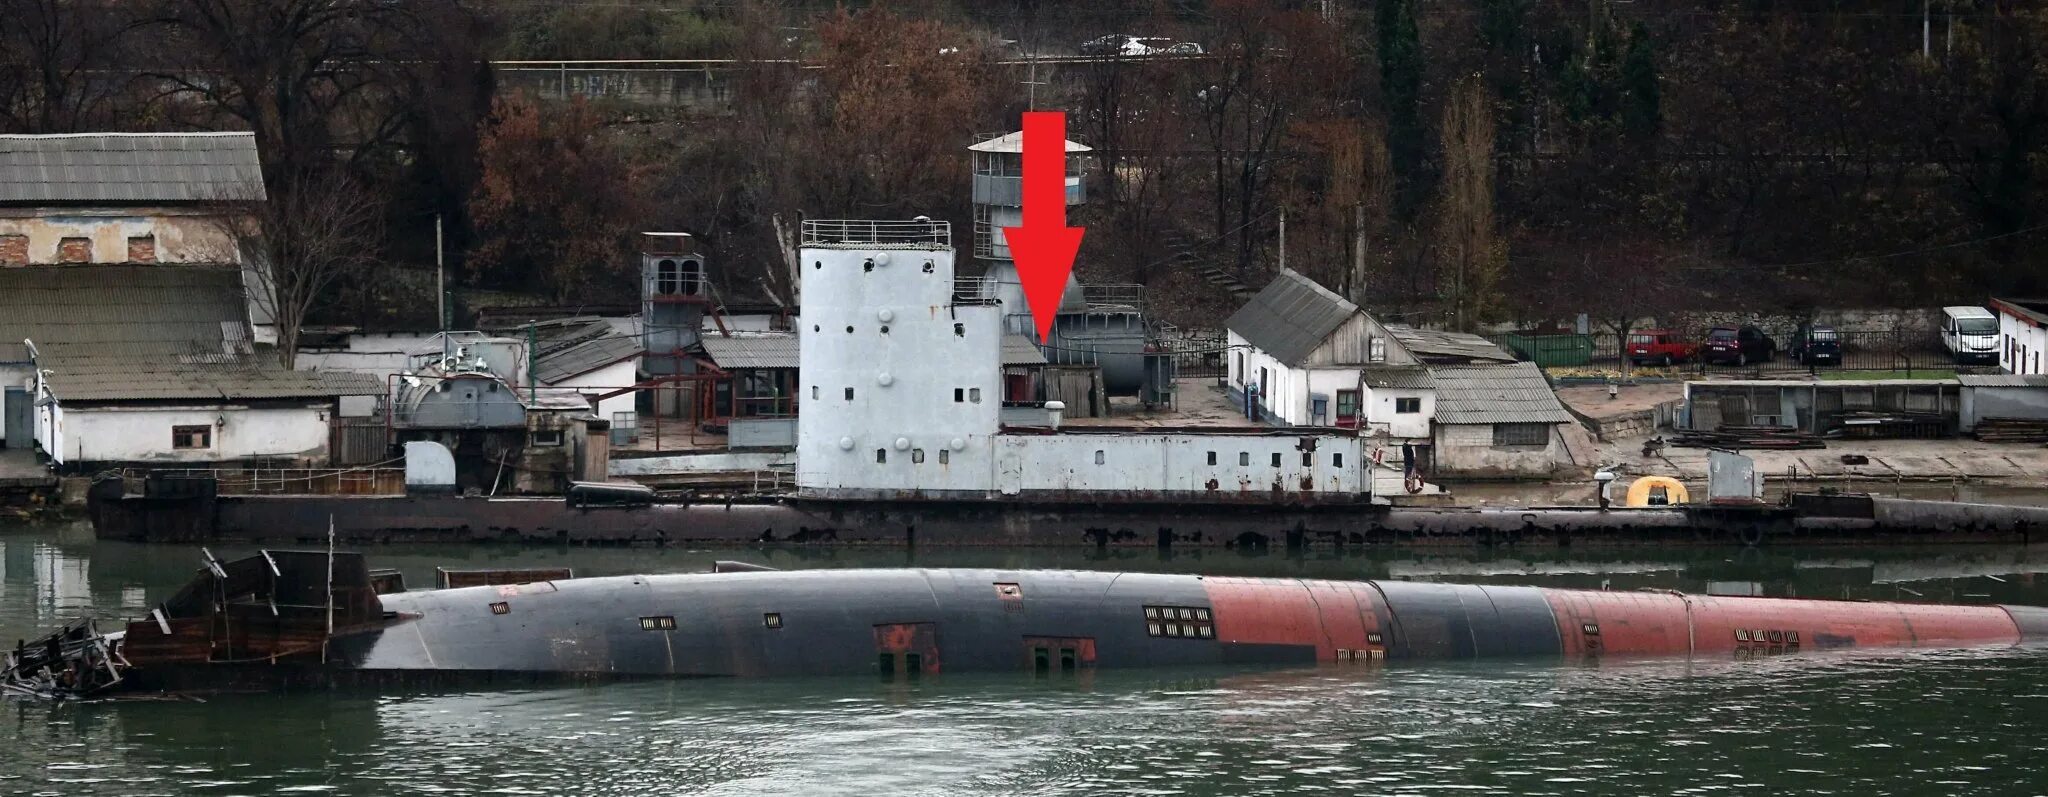 Подводная лодка УТС-247 Севастополь. Севастополь затонул плавдок. Пд 16